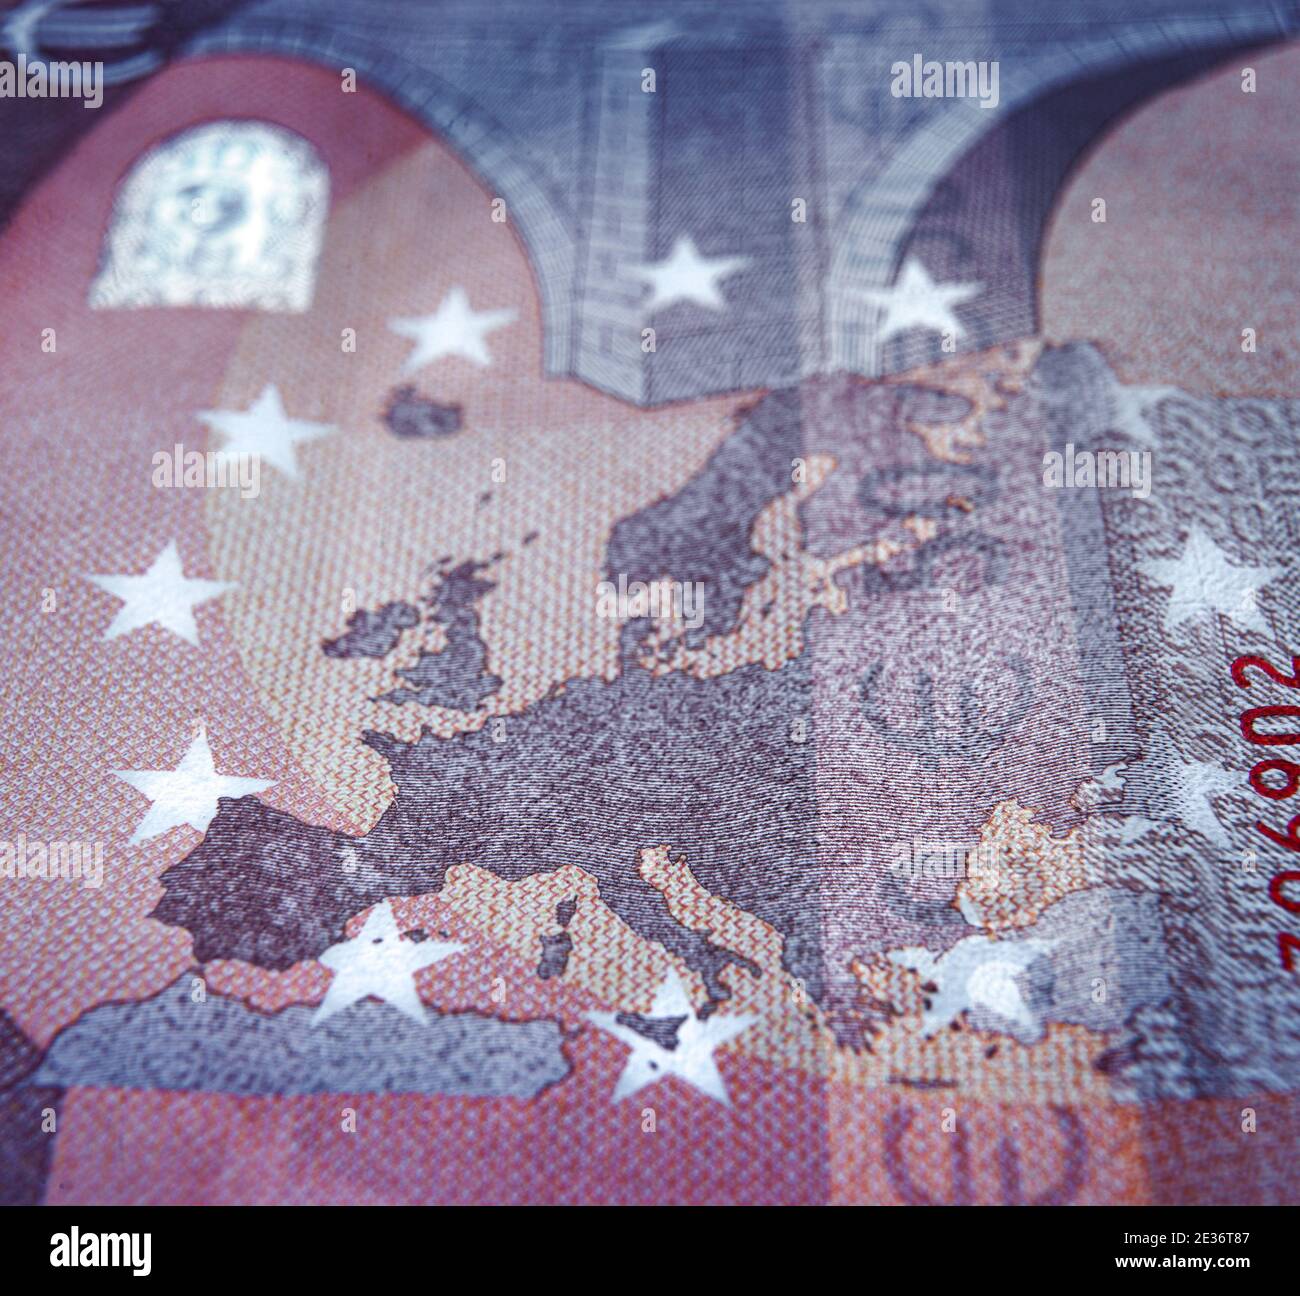 Flacher Fokus gegenüber der Euro-Banknote, die sich auf die europakarte konzentriert Stockfoto